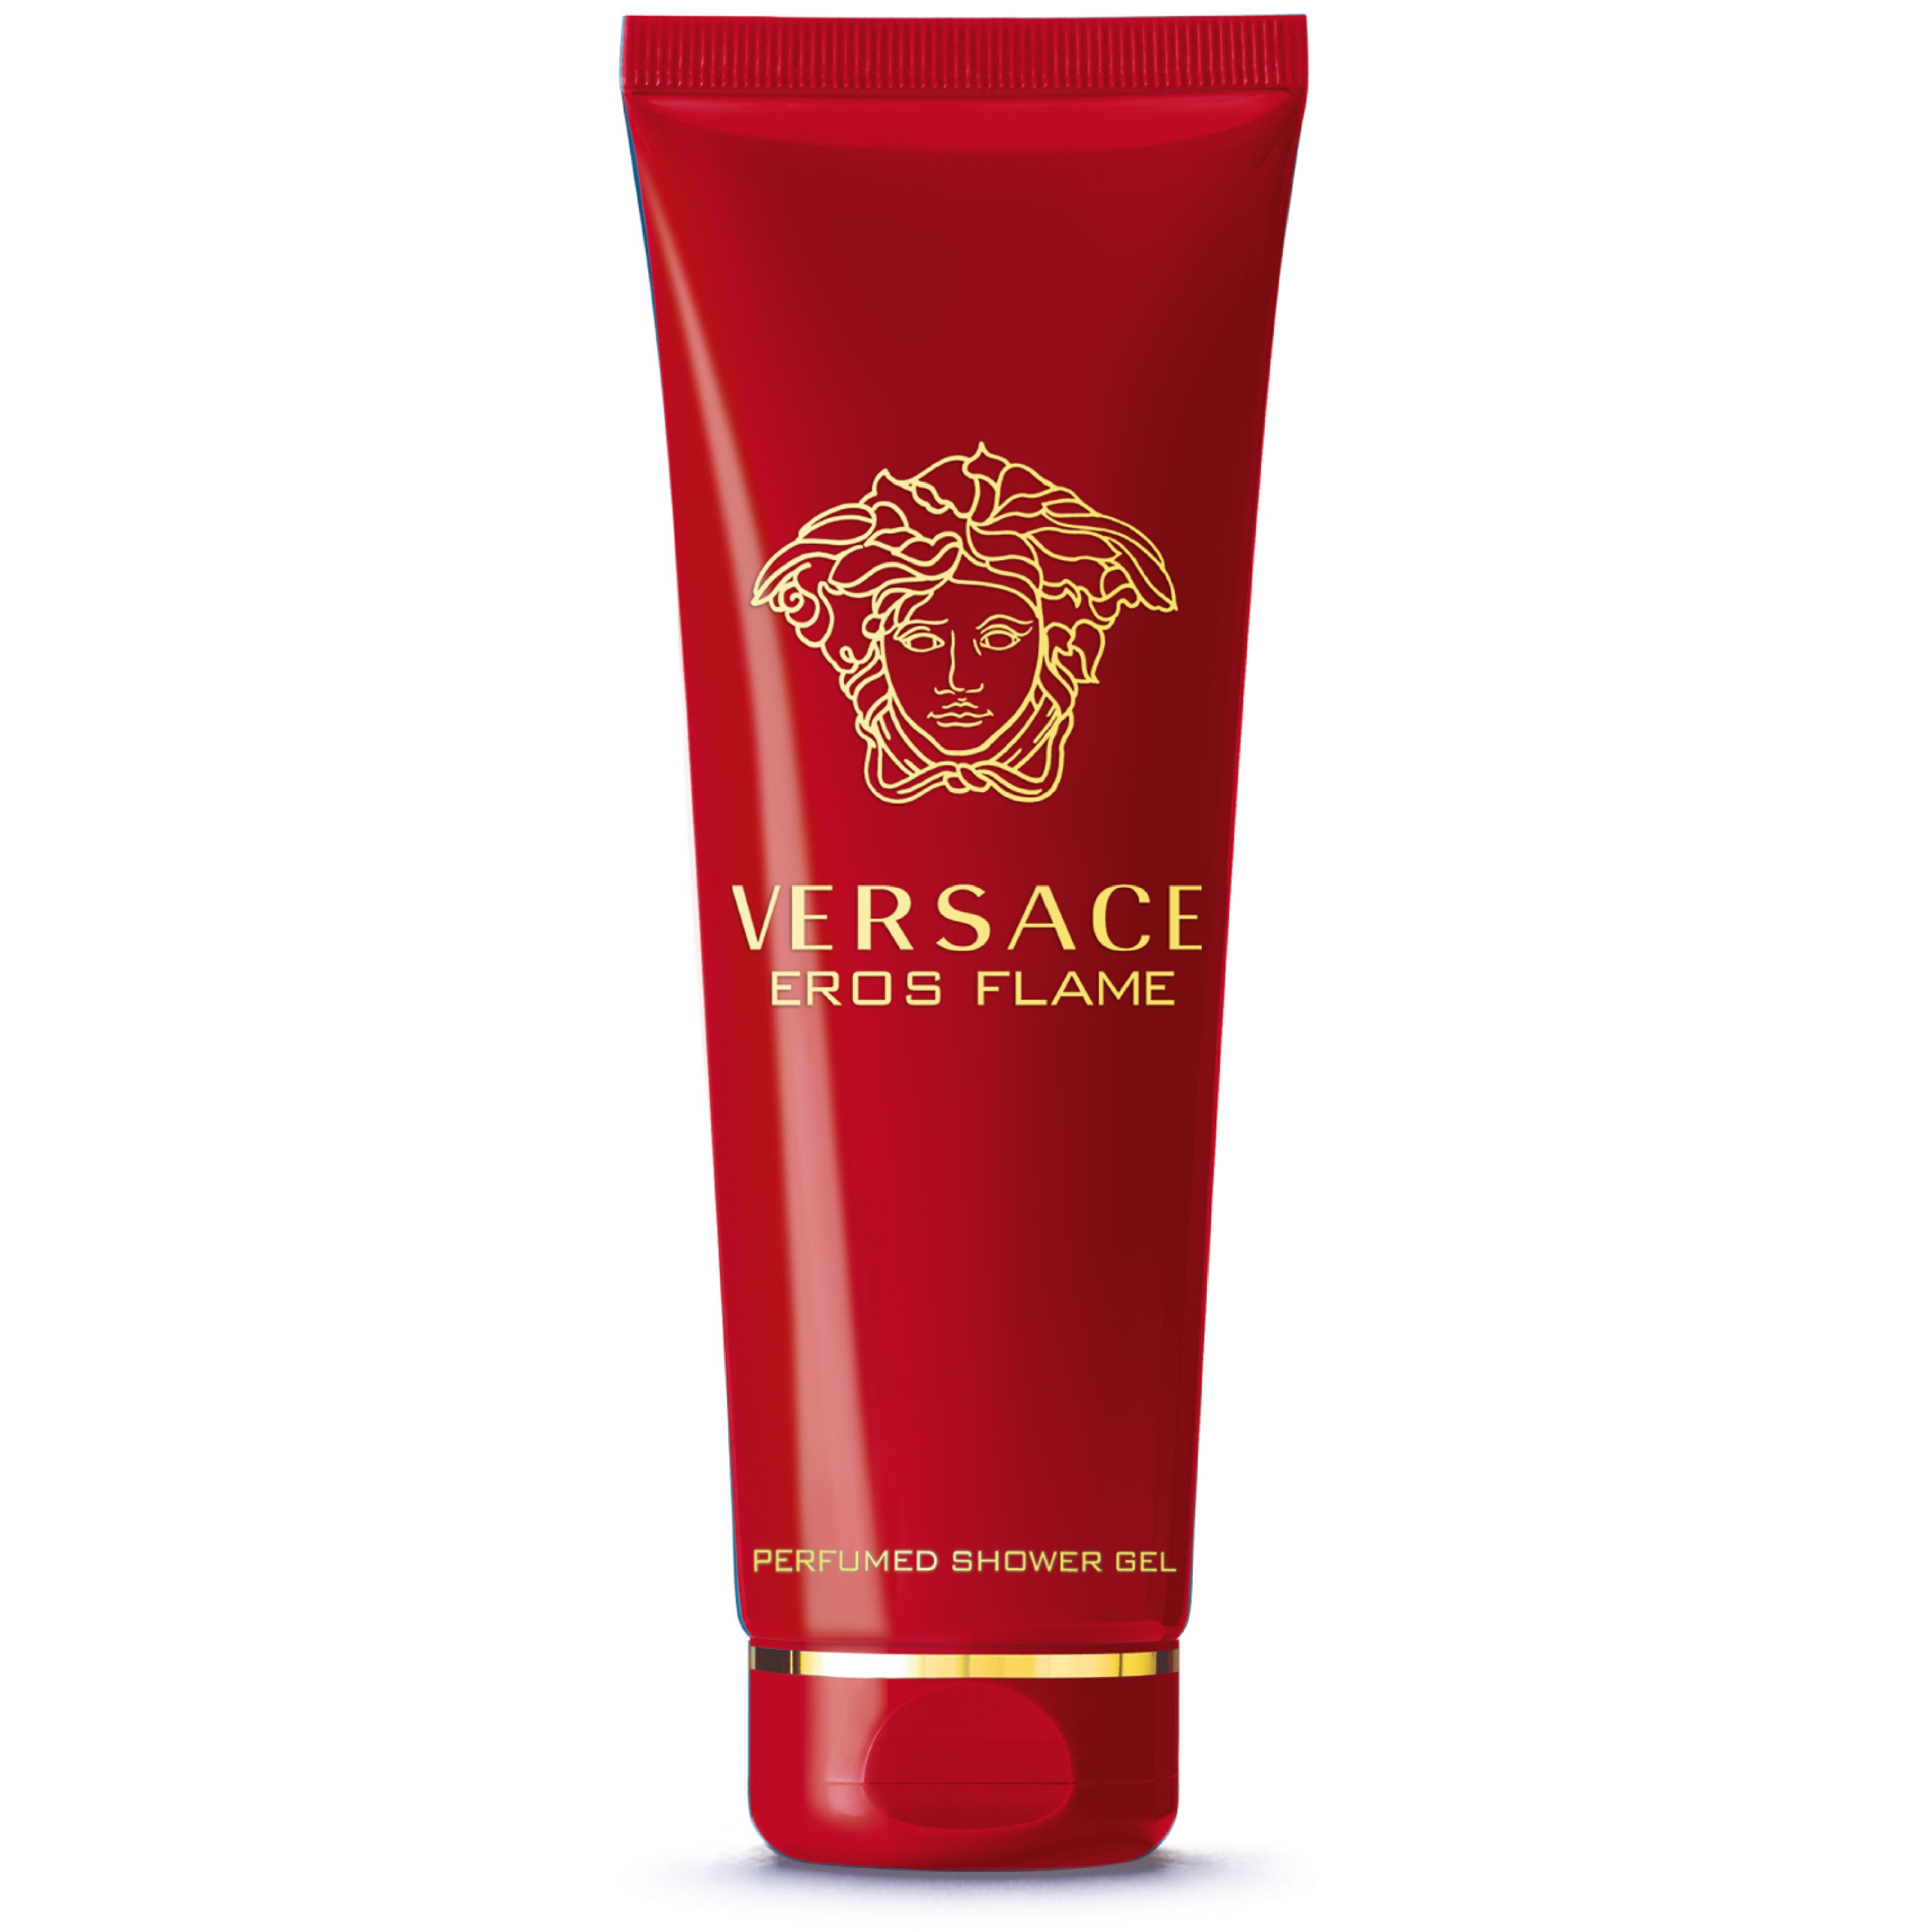 Versace Eros Flame Perfumed Shower Gel 1